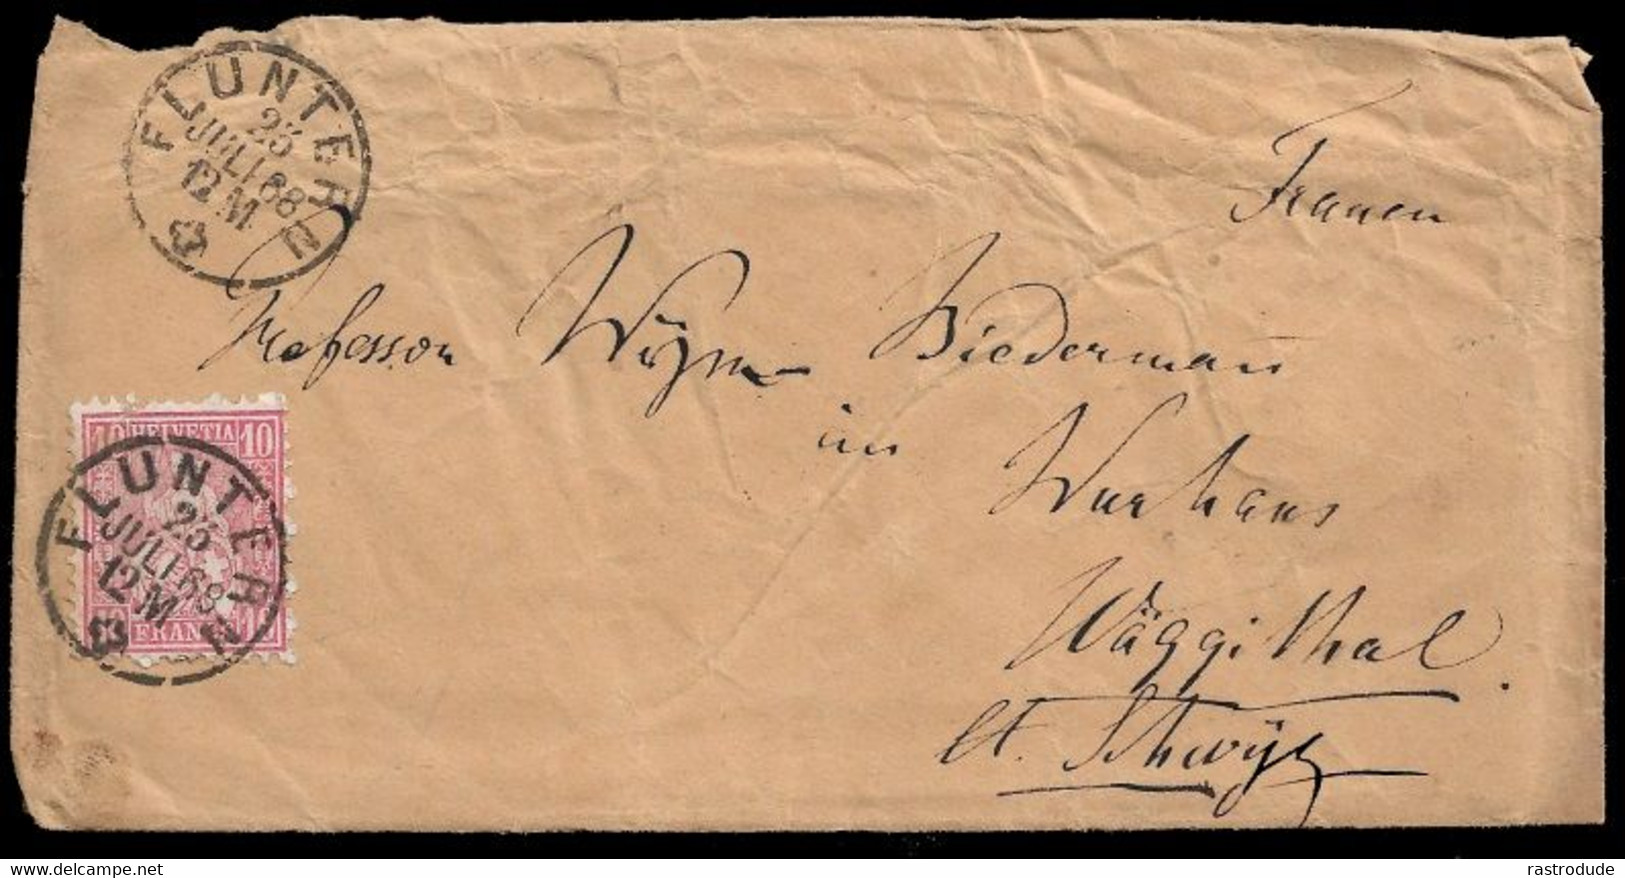 1868, 23 JULI -  SCHWEIZ SUISSE SWITZERLAND - 10Rp BRIEF (SBK 38) - FLUNTERN (ZÜRICH ZH) - Covers & Documents